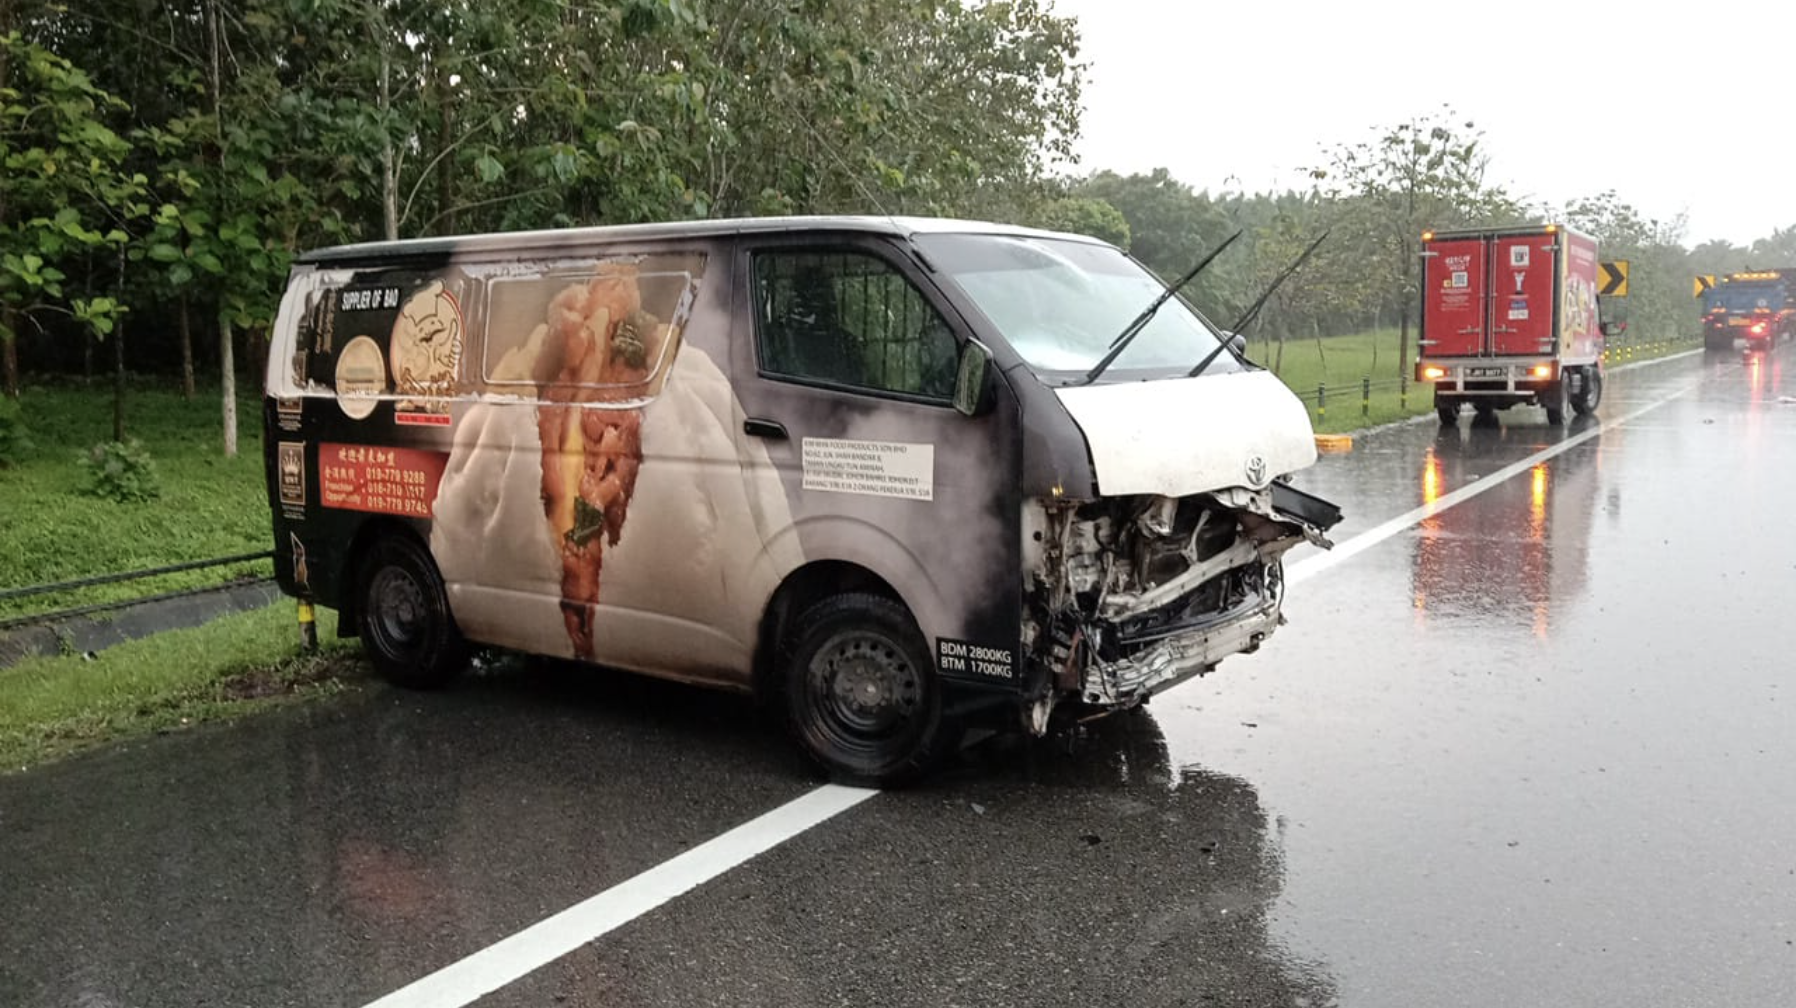 Van in the accident